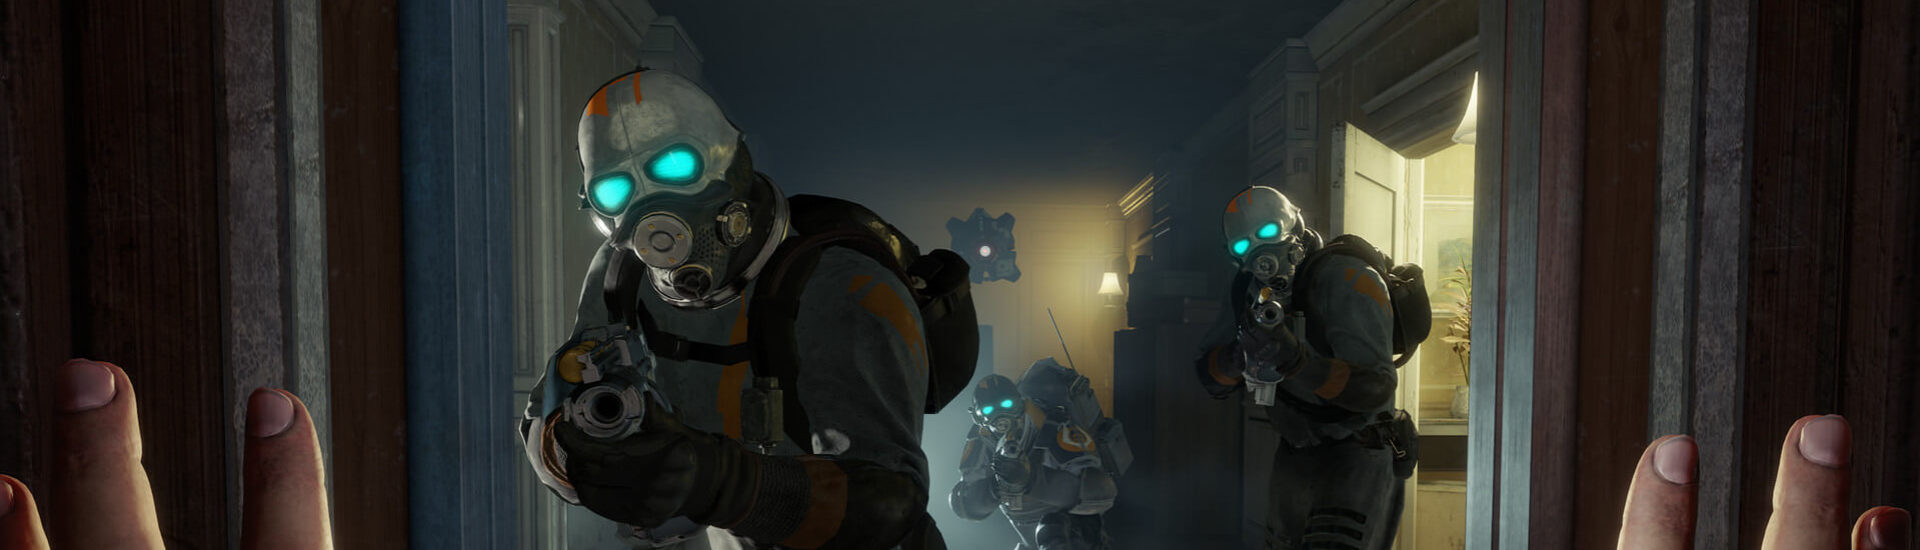 Valve: Neue Spiele in Planung, Singleplayer steht im Fokus